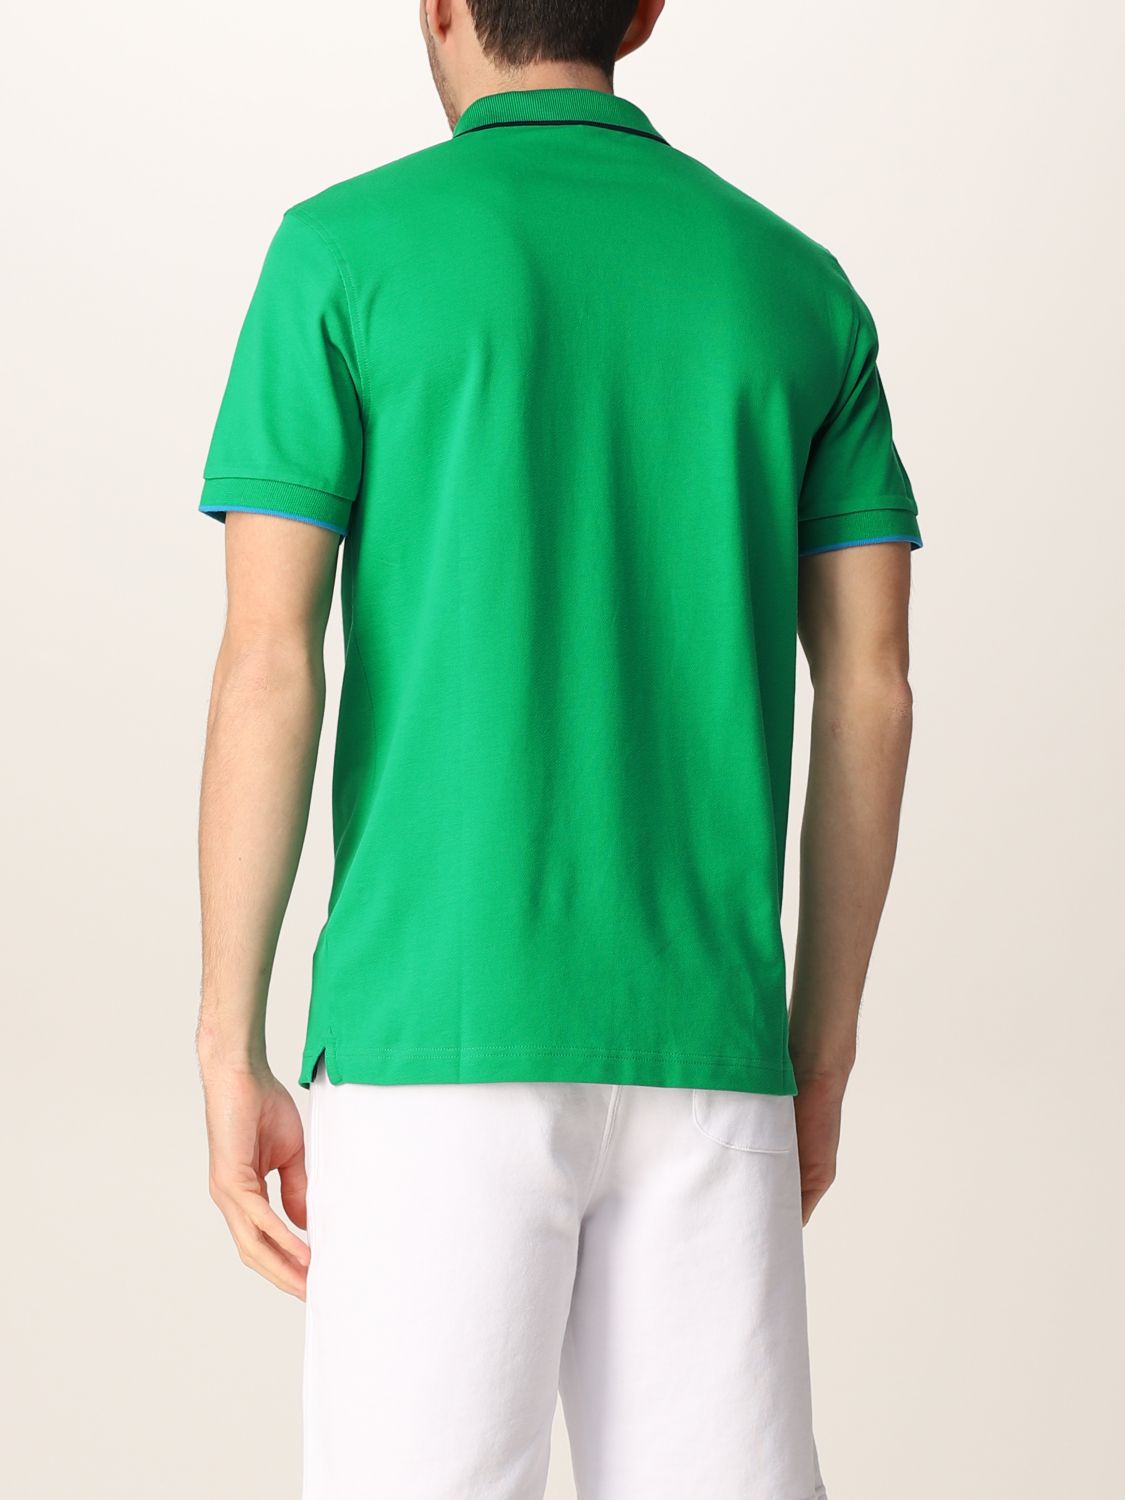 Sun 68 Outlet: basic polo shirt with logo - Green | Sun 68 polo shirt ...